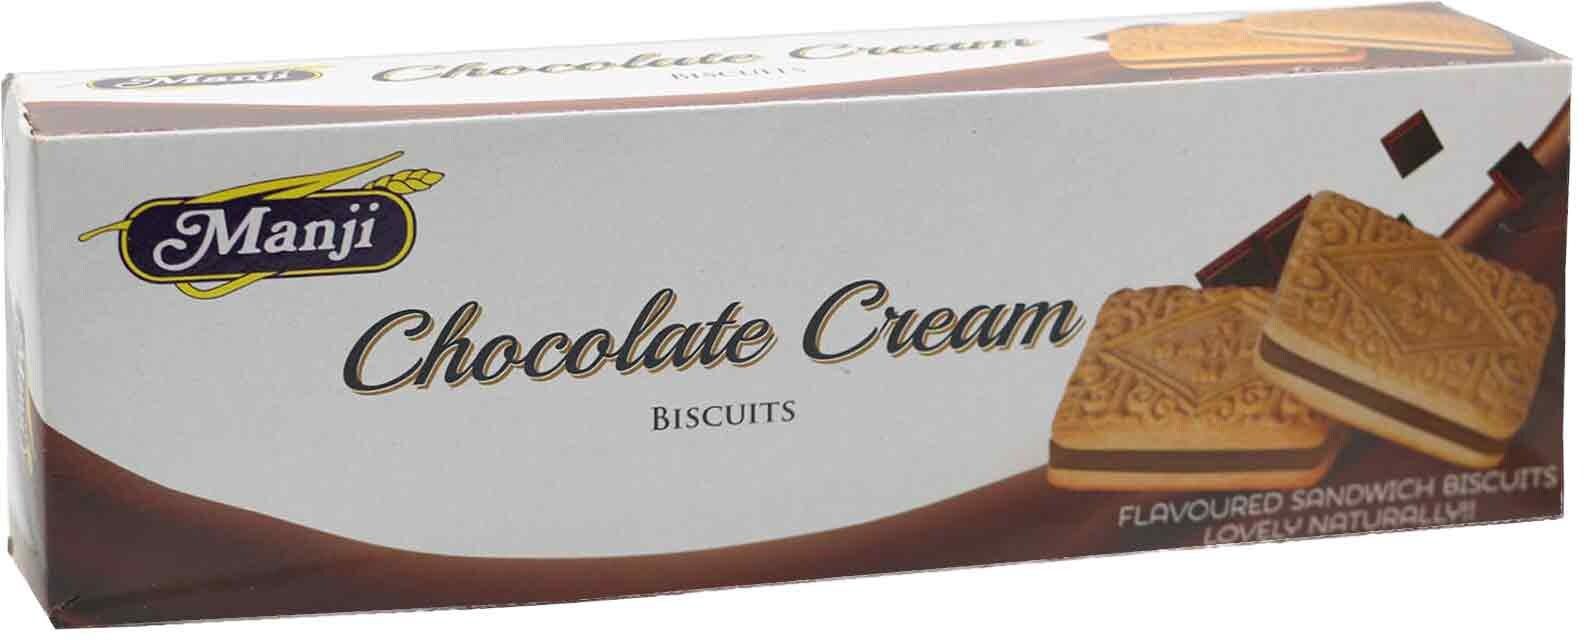 Manji Chocolate Cream Biscuits 160g